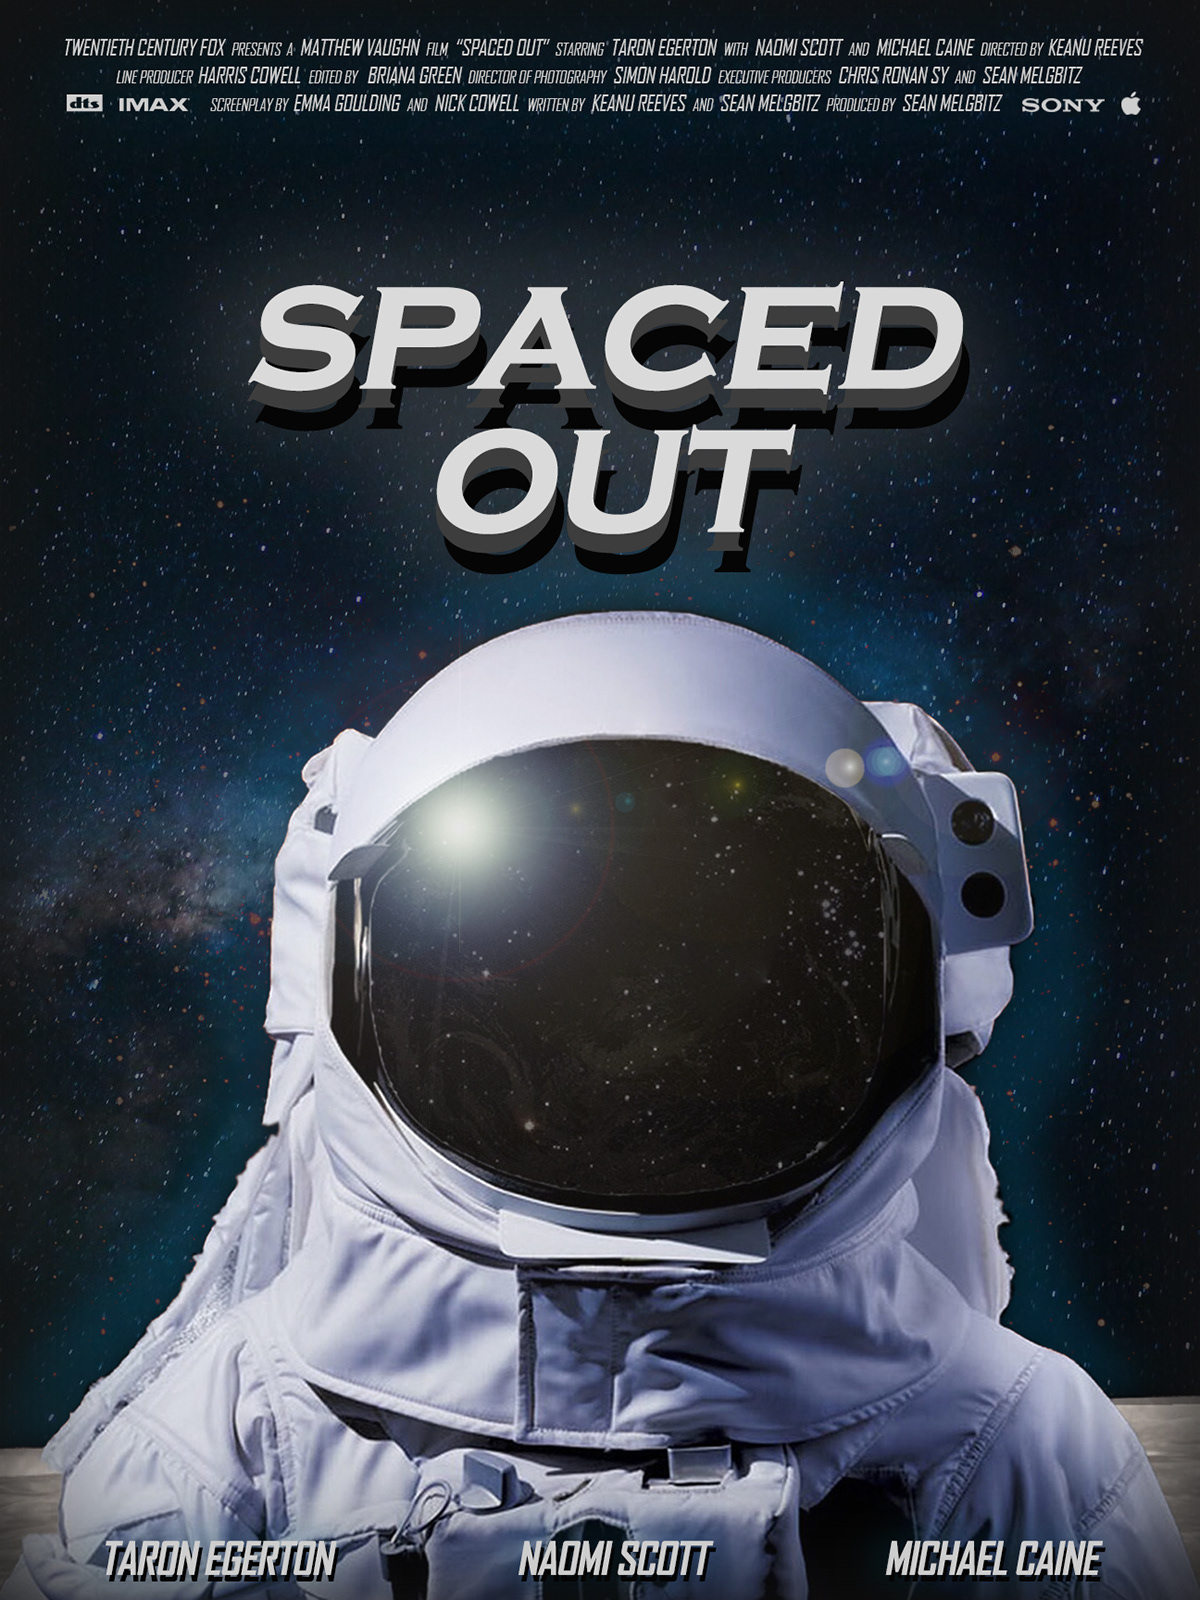 Adobe Photoshop astronaut movie movie design movie poster movie poster design photoshop poster Poster Design Space 